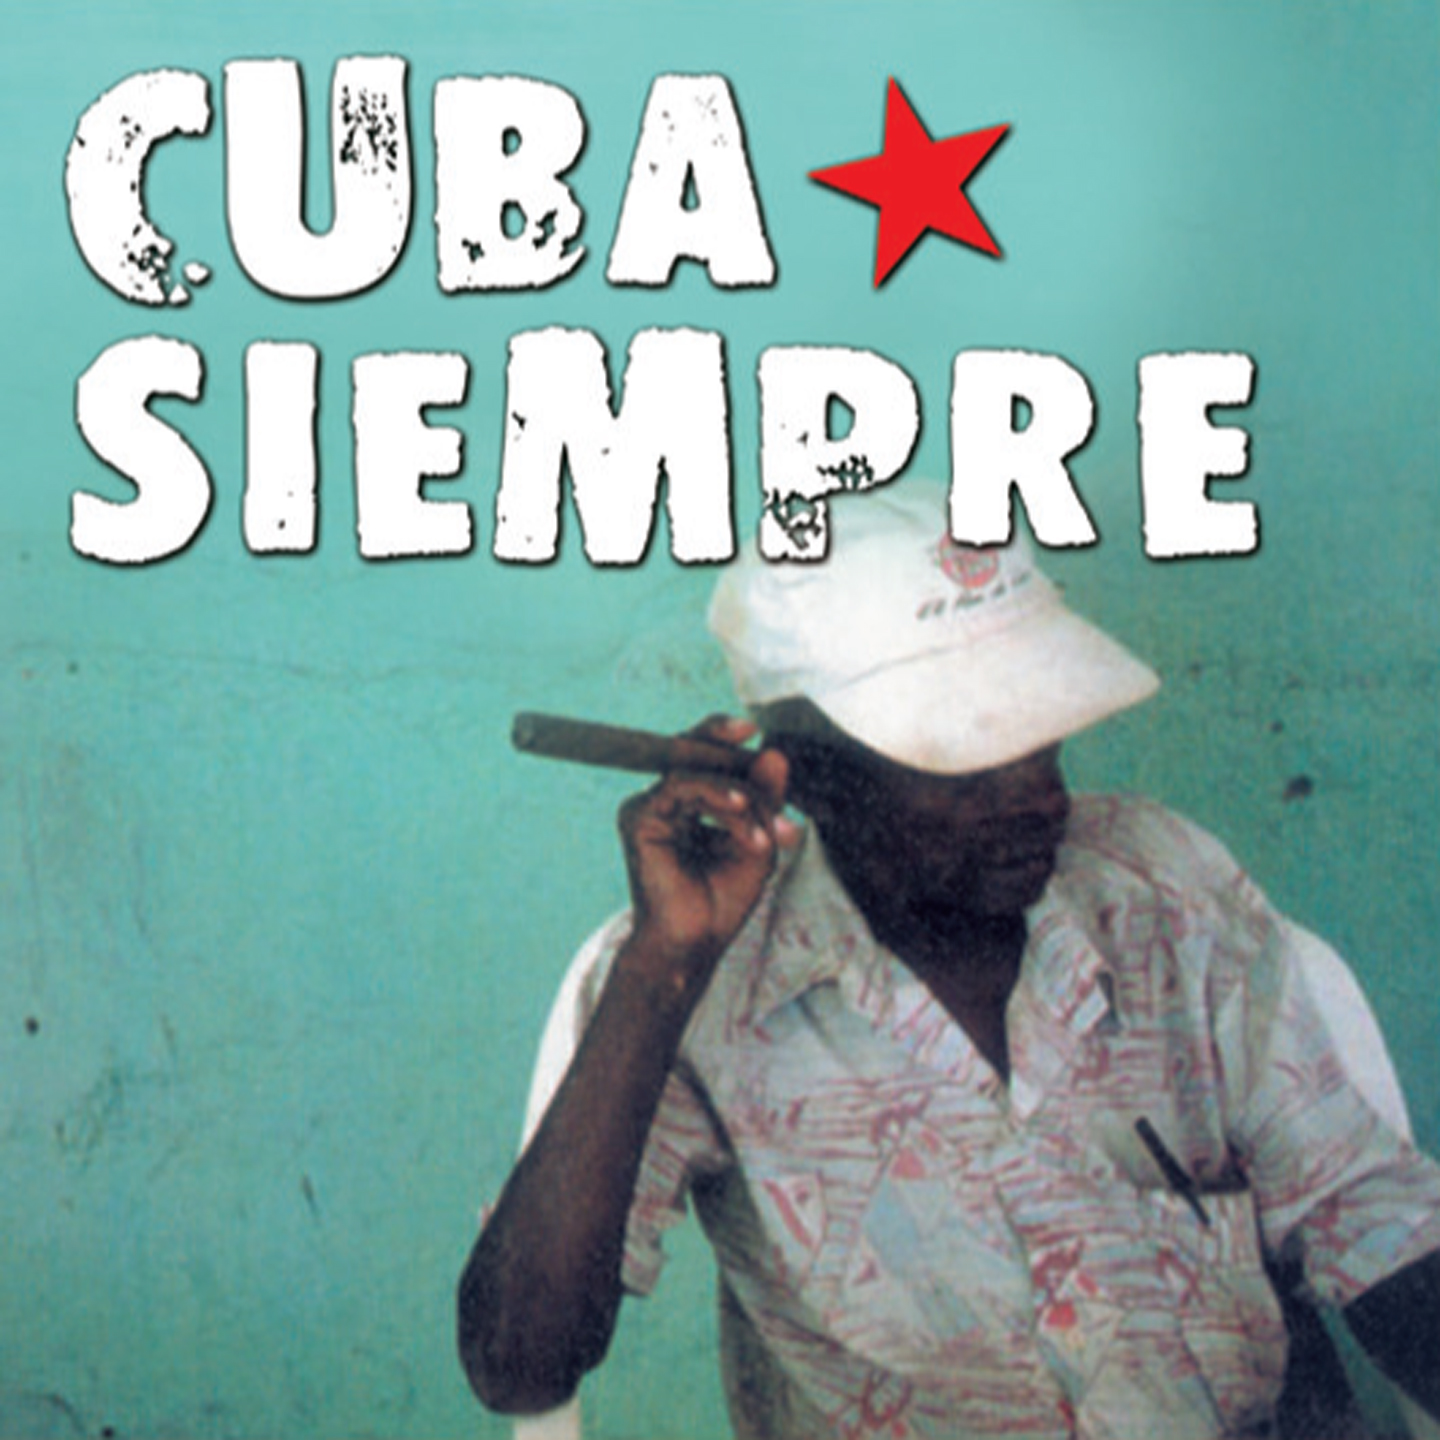 CUBA SIEMPRE